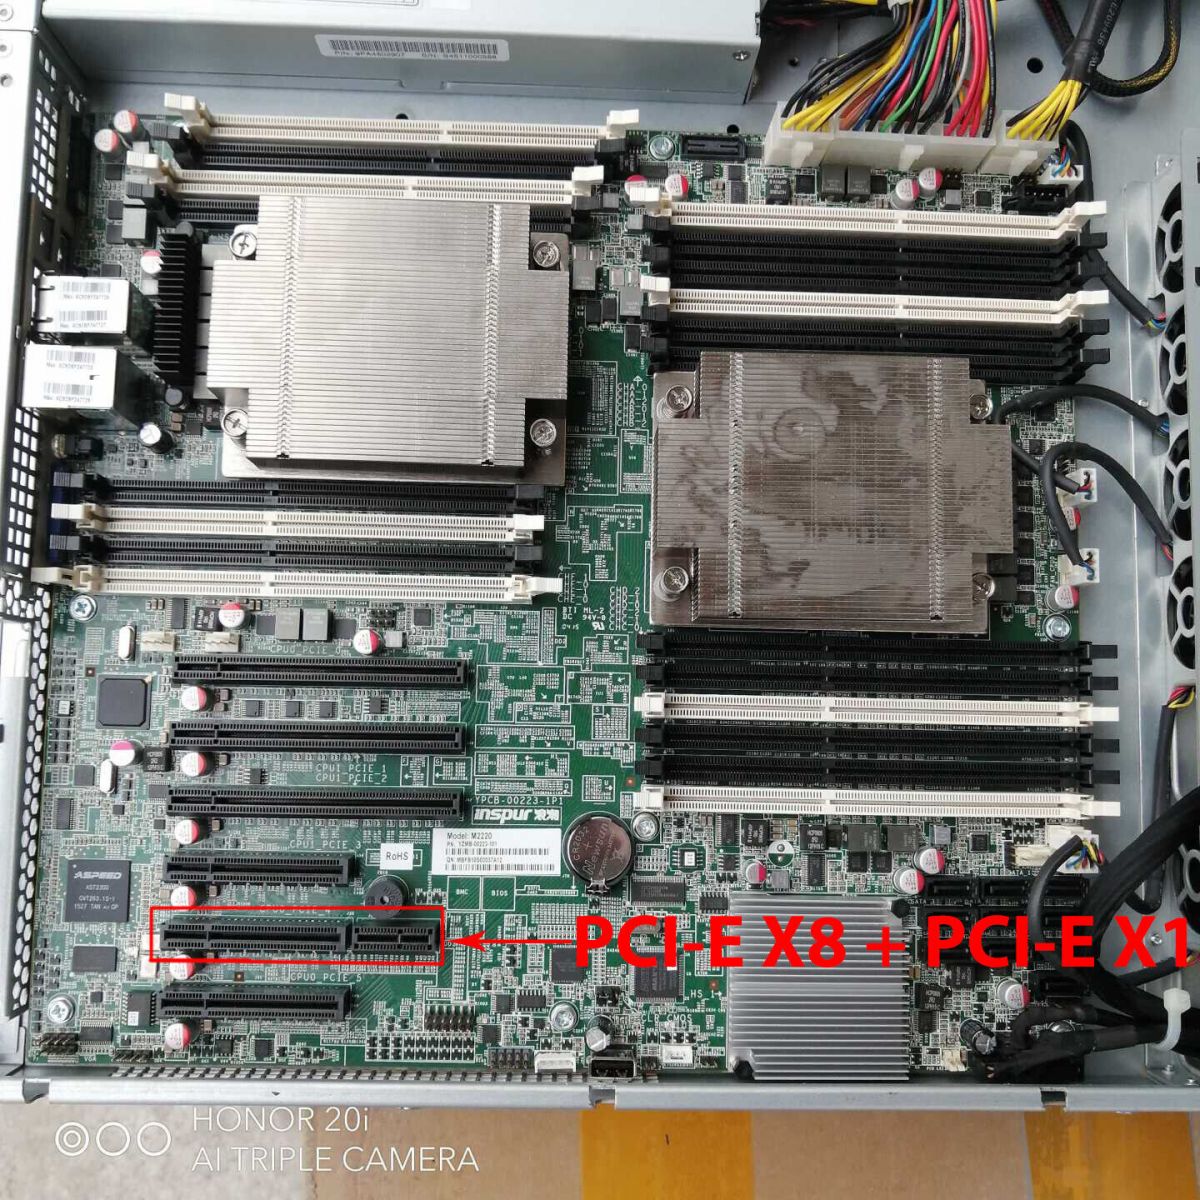 Cạc mạng server PCI-E 2 lan Intel X540-T2 10G  PCI-Express